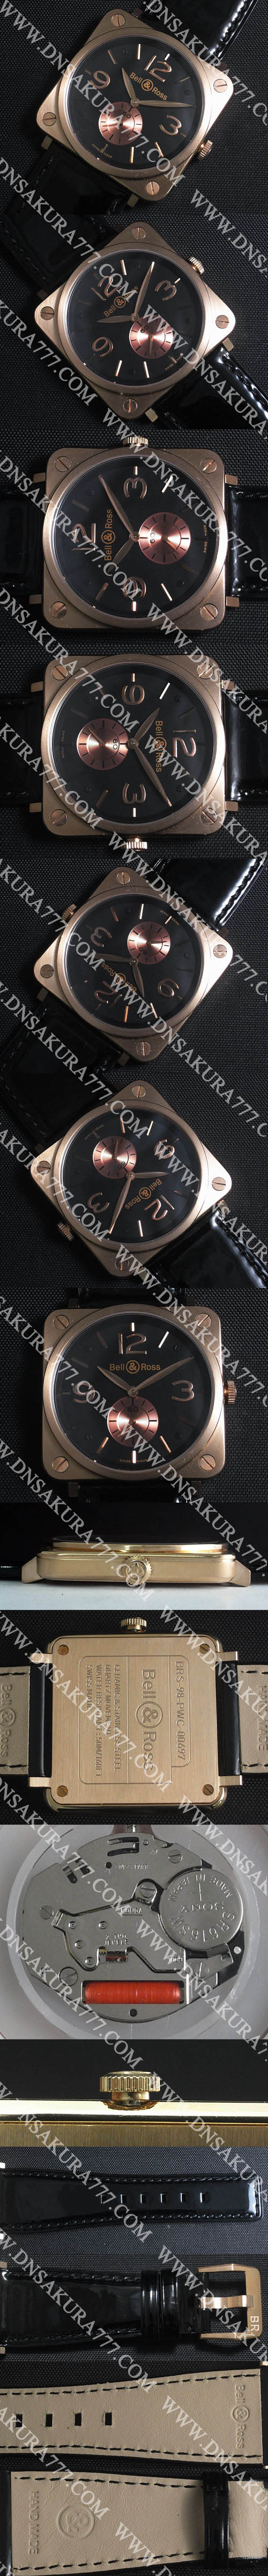 輸入品腕時計ベル&ロス BRS-98 (エバーローズゴールド)